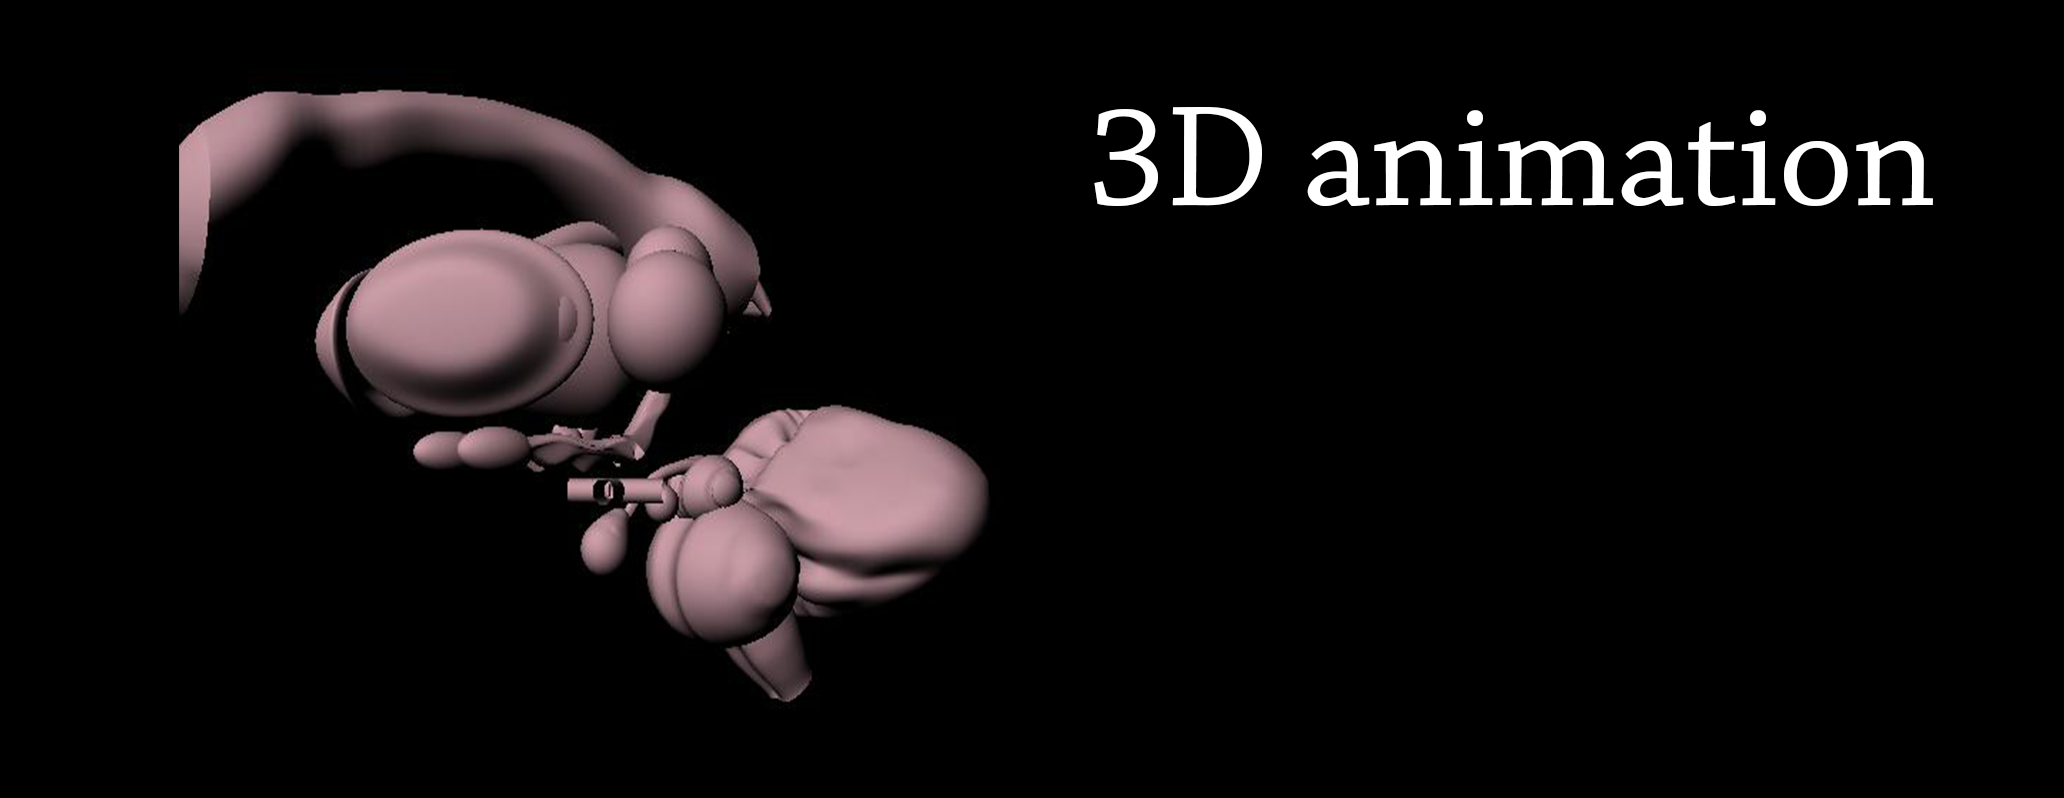 Cervello: secondo capitolo di un'animazione 3D per localizzare il nucleo reticolare talamico